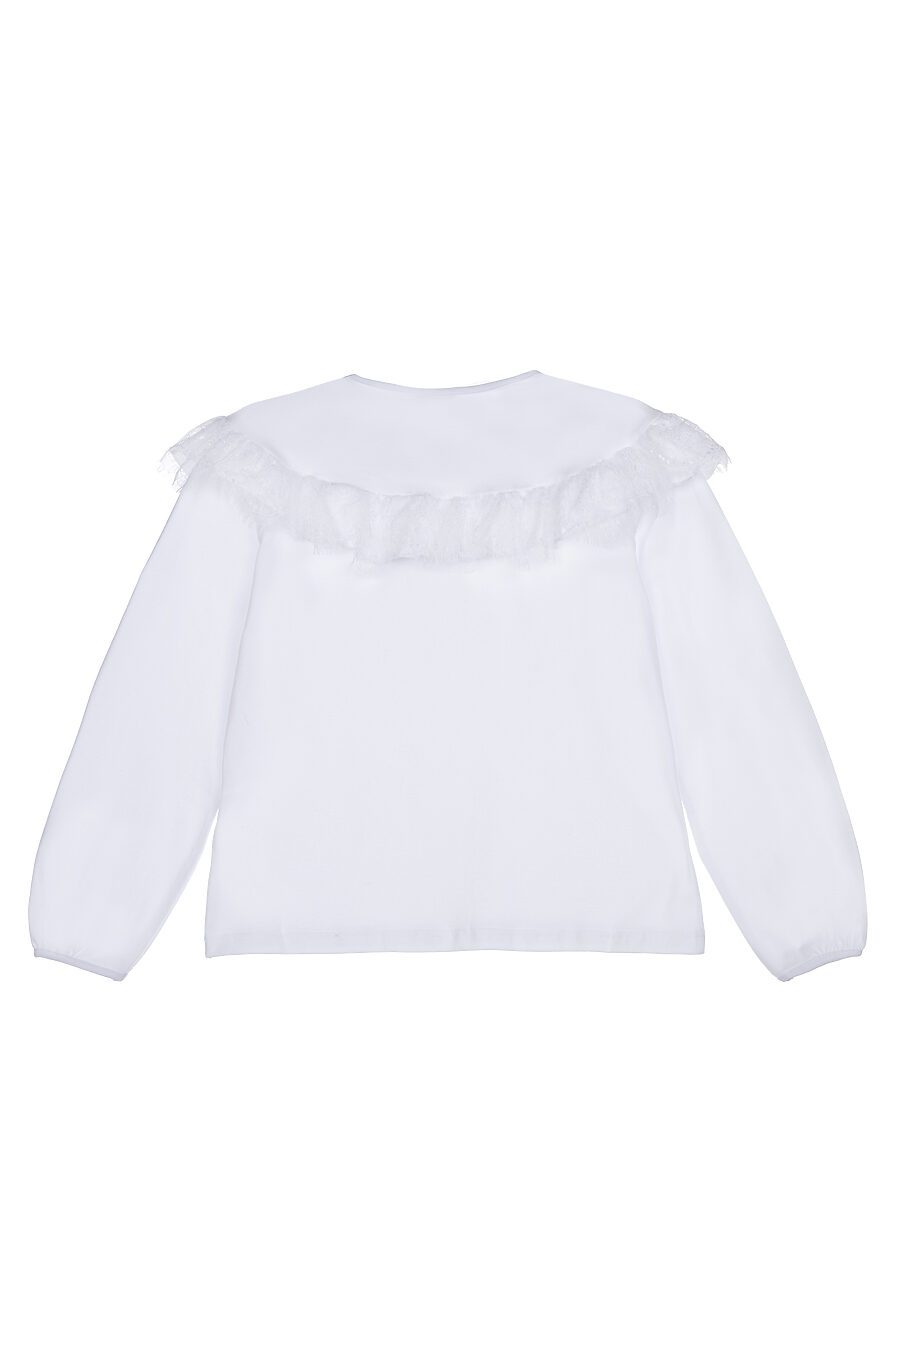 Блуза PLAYTODAY (785002), купить в Moyo.moda